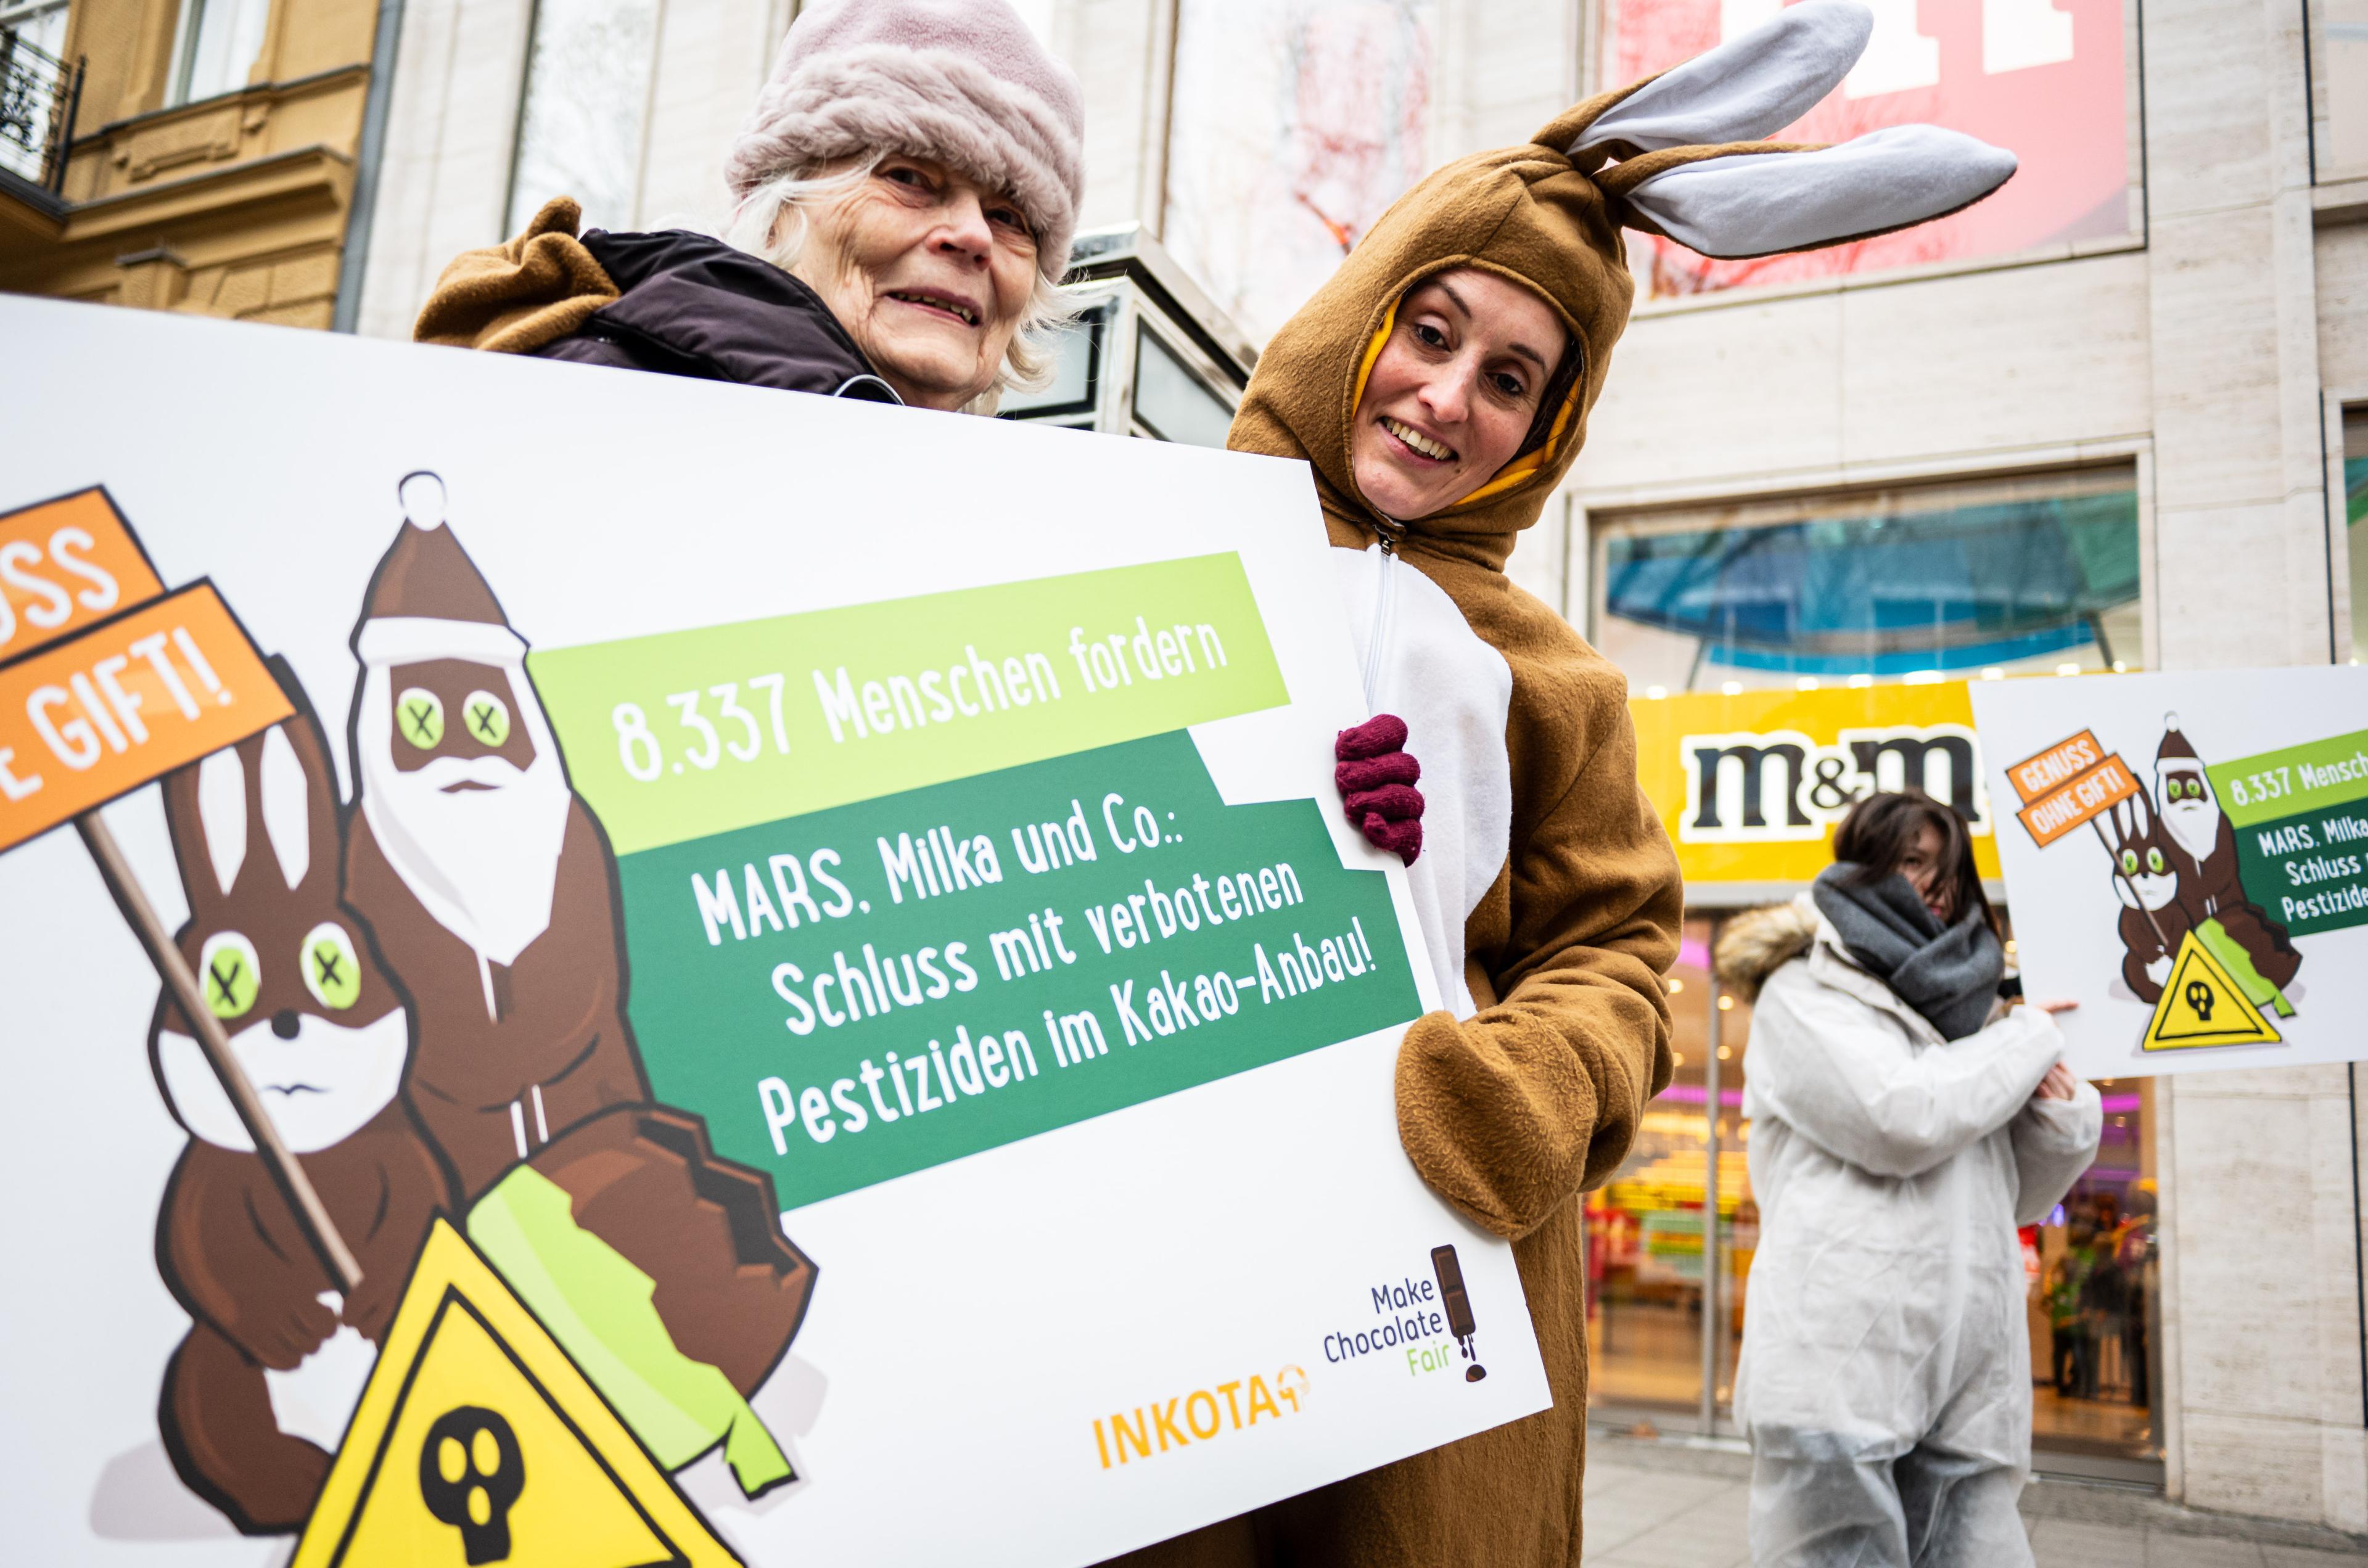 Das INKOTA-Team mit Unterstützerin aus dem Weltladen bei der Kundgebung und Protestaktion vor dem Mars M&M Store in Berlin zum Abschluss der "Genuss ohne Gift"-Aktion